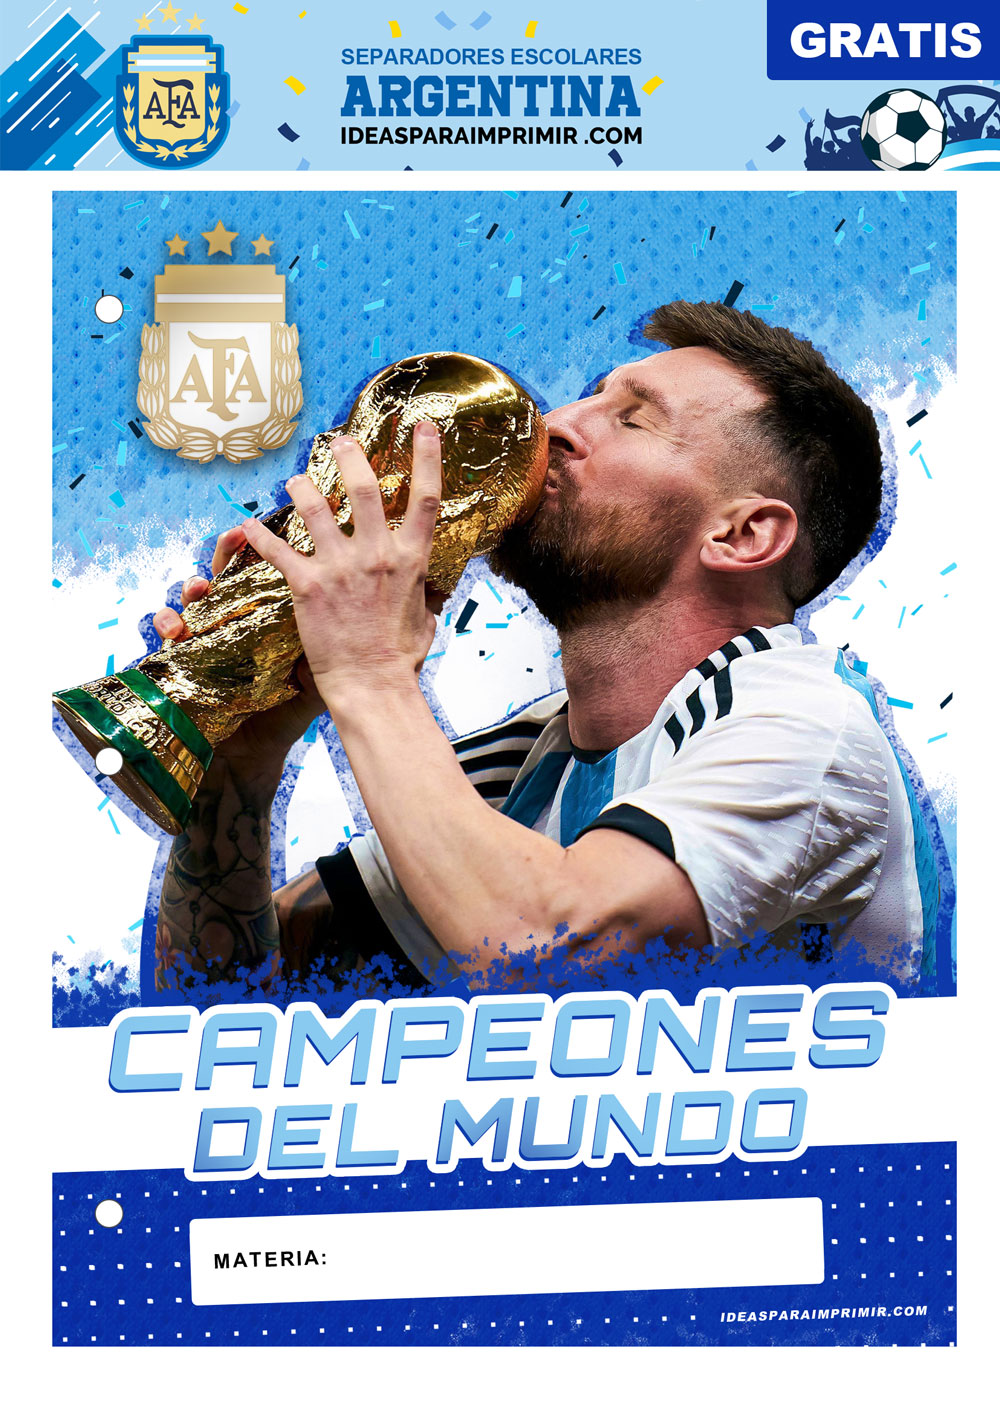 Separador de Materias de Argentina y Messi